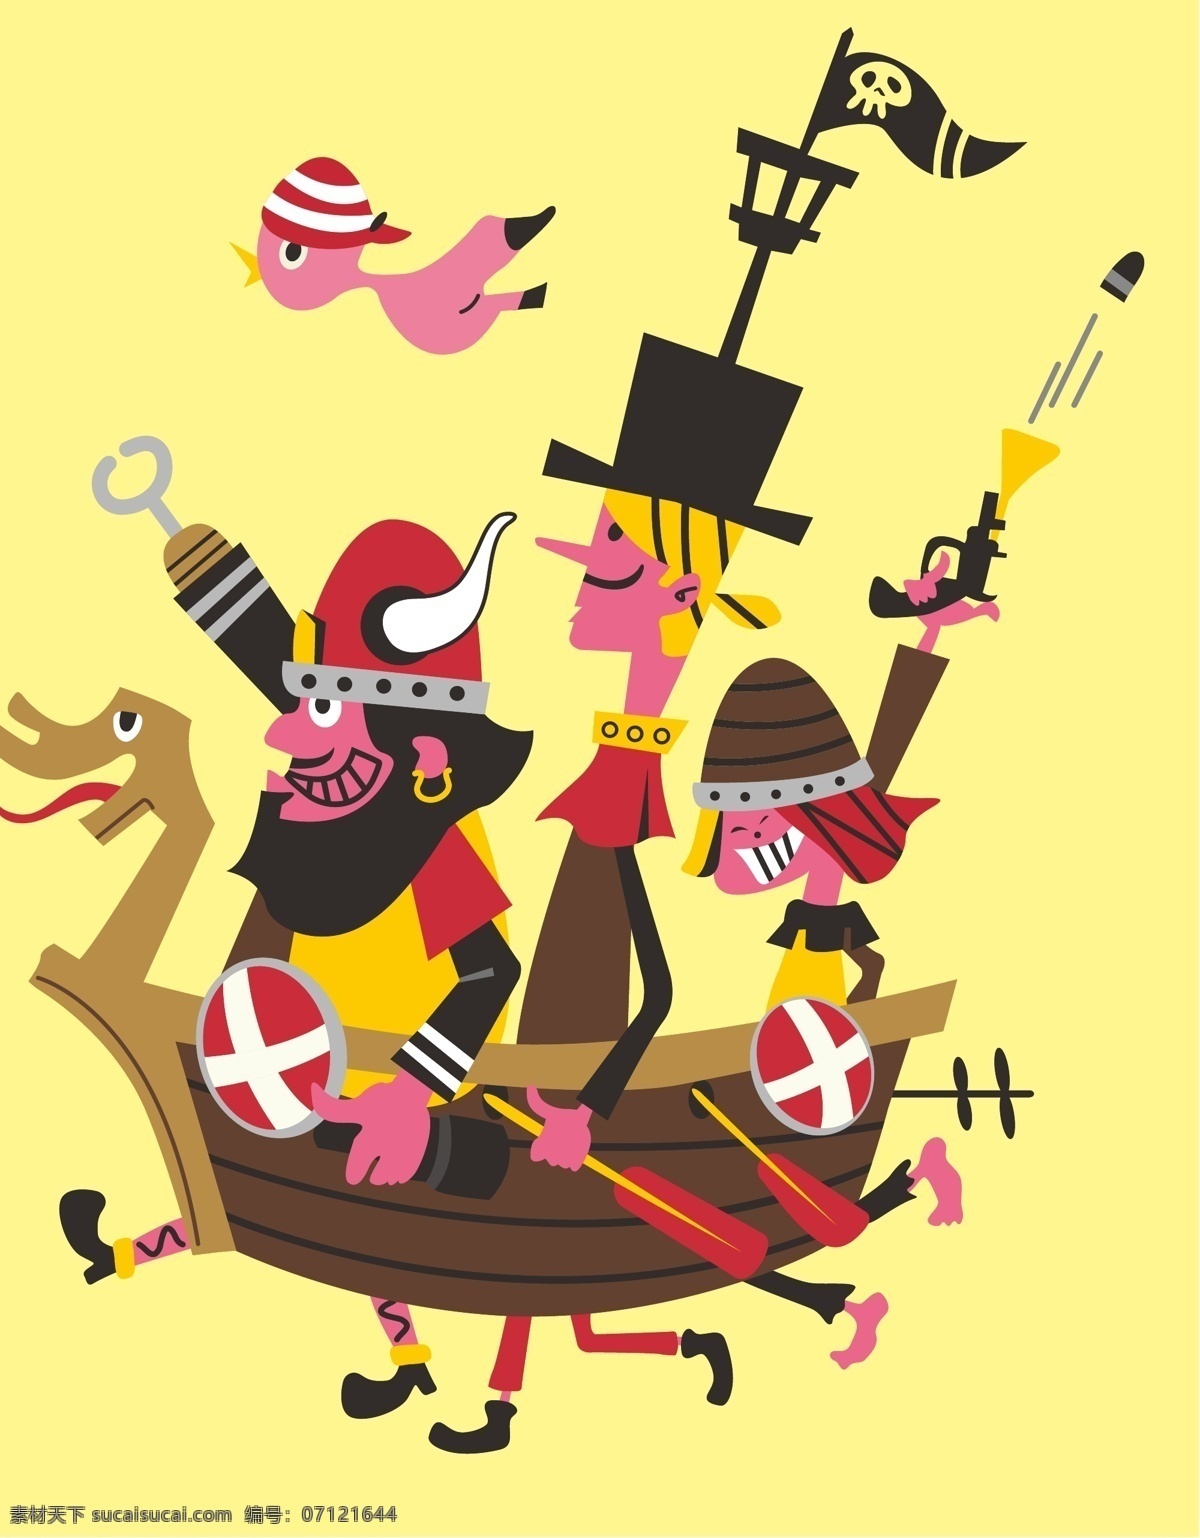 飞鸟 海盗船 加勒比海盗 卡通设计 卡通图案 龙船 手绘插画 手枪 盗 维京勇士 杰克船长 船桨 童话世界 矢量 插画集